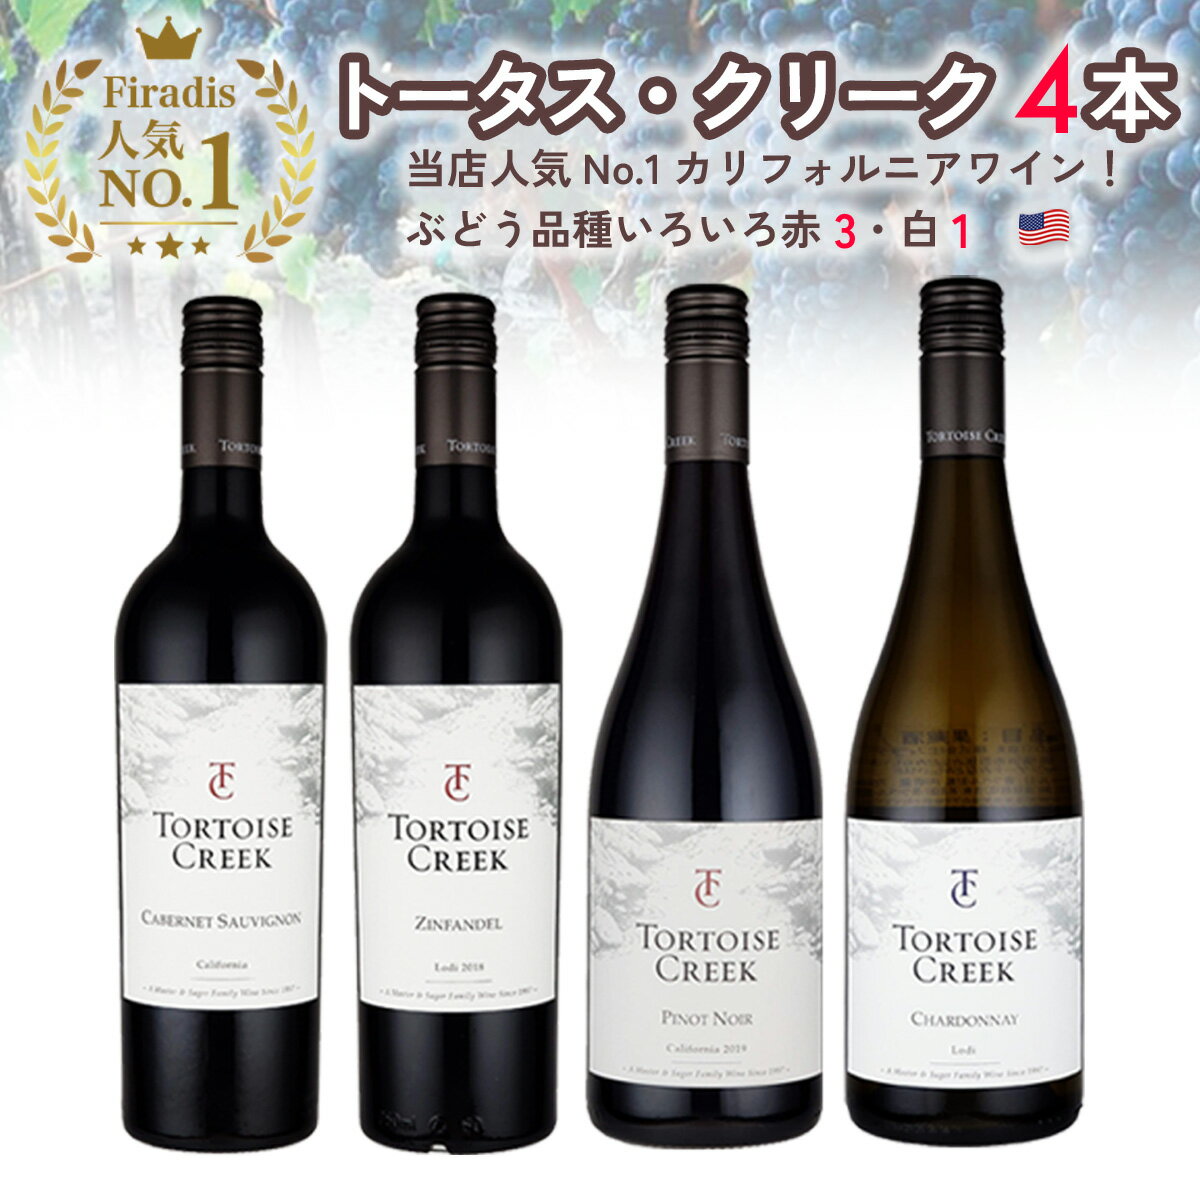 【Firadis独占販売】ワイン セット 「トータス・クリー